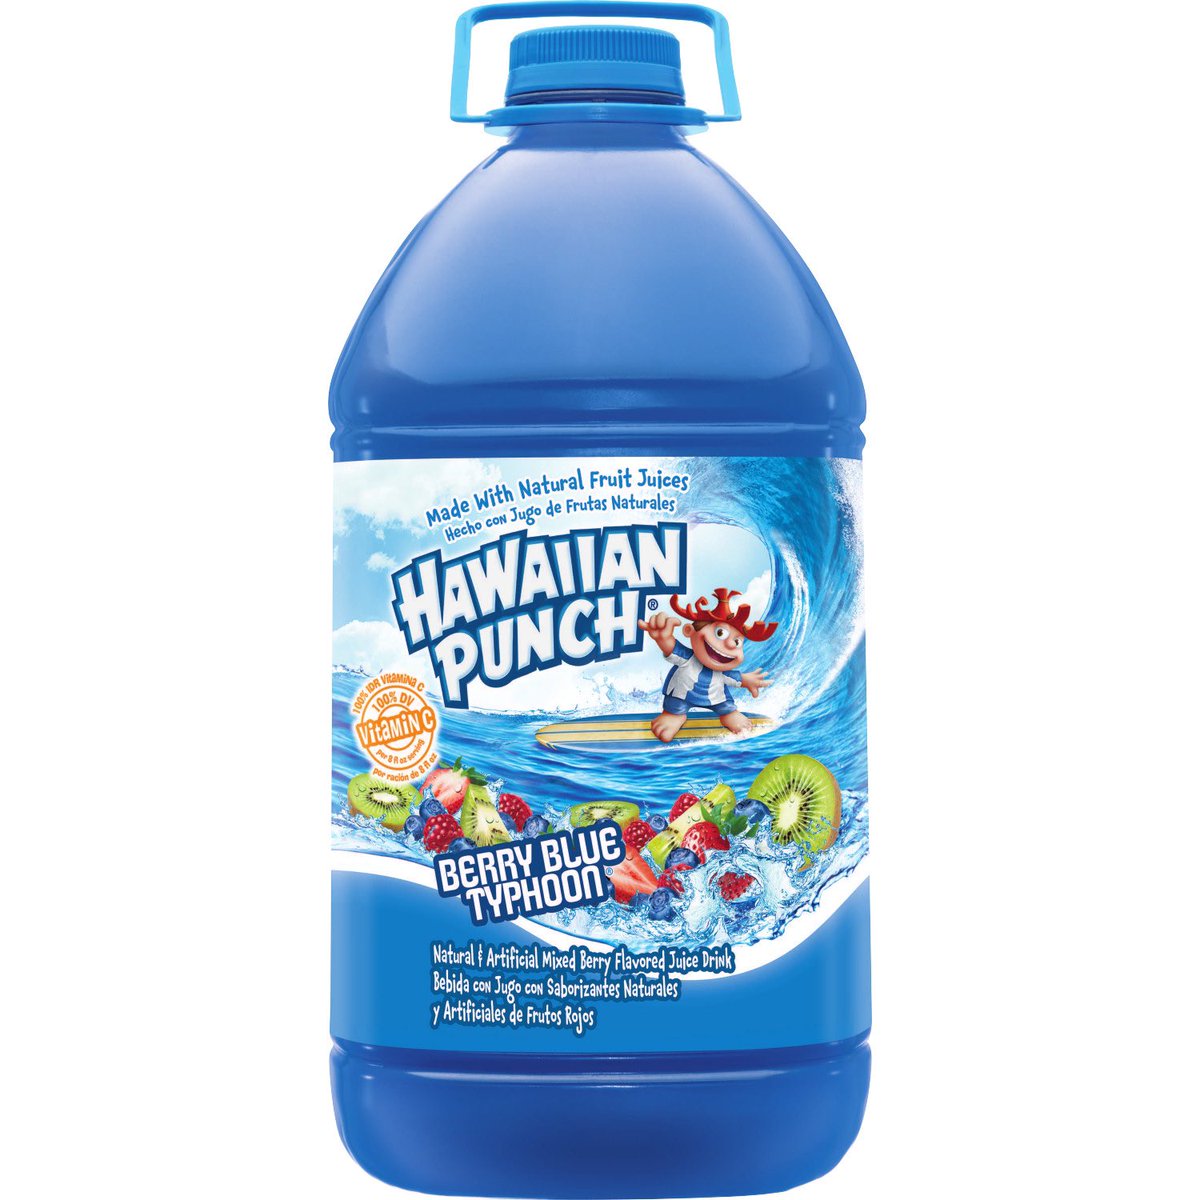 Blue Hawaiian Punch: